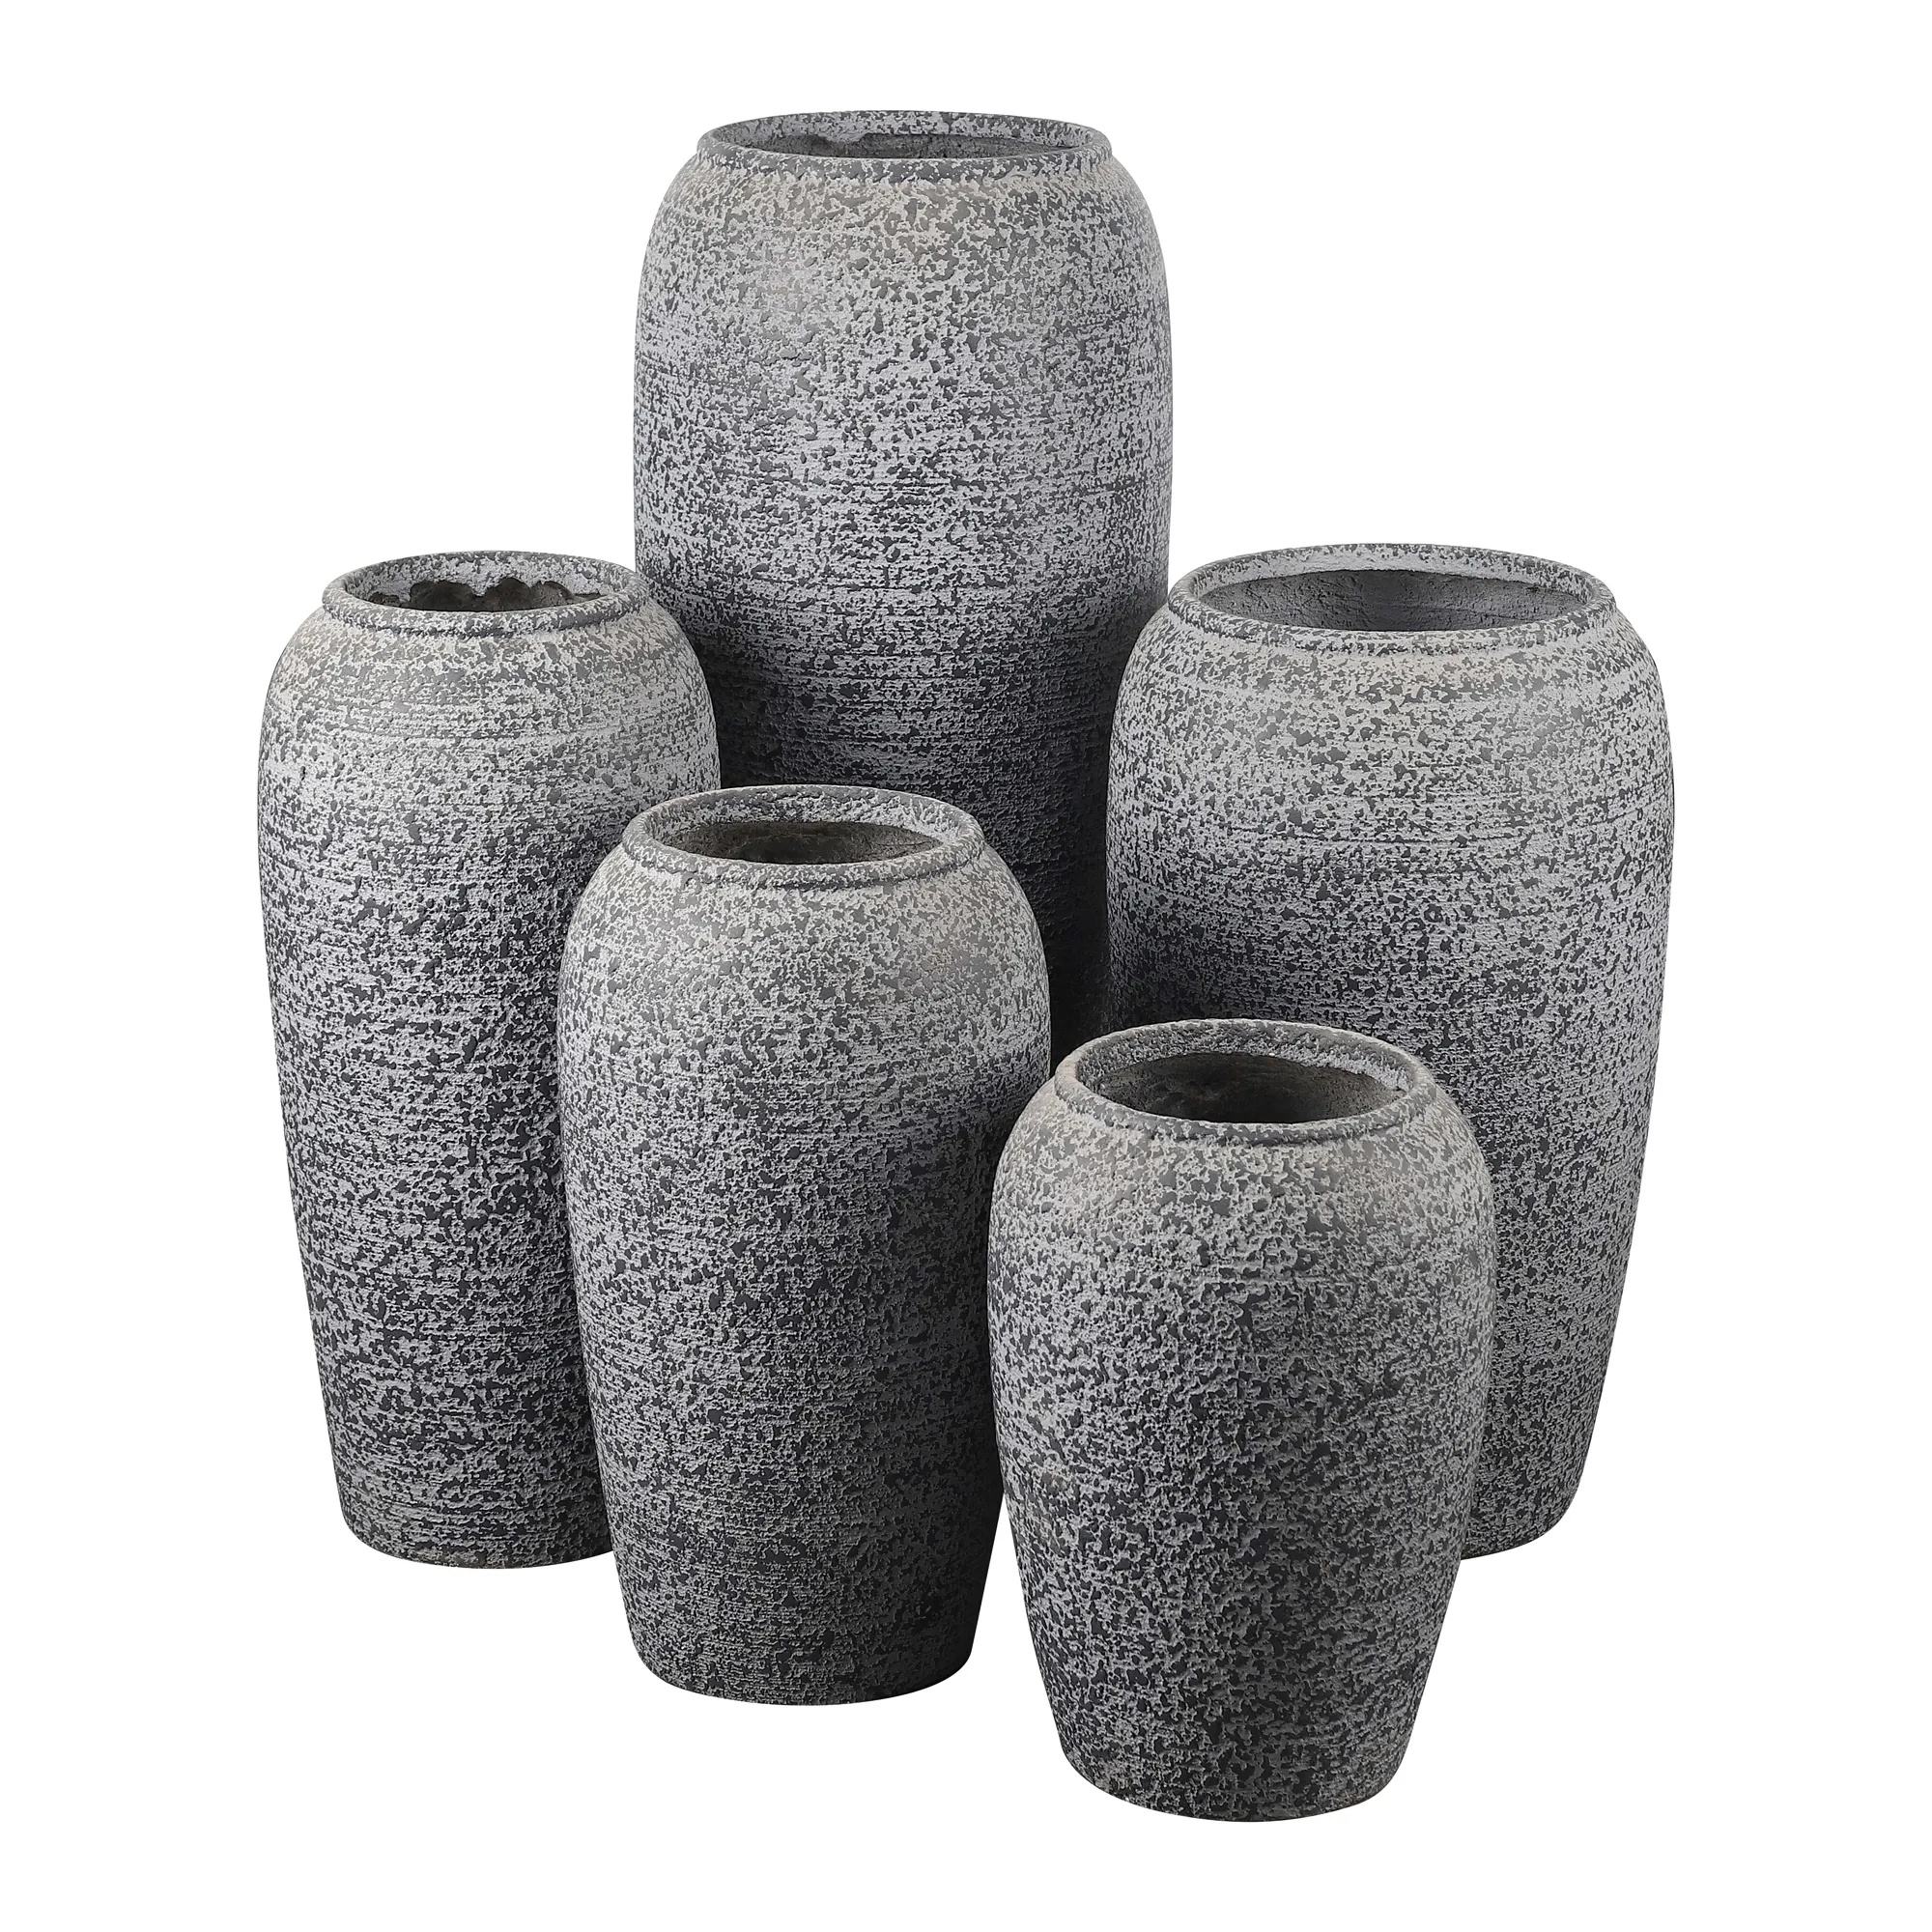 Pot d'urne en Fiber d'argile de qualité pour l'extérieur, Style Antique brossé, Vase en Fiber de verre de grande taille pour sol